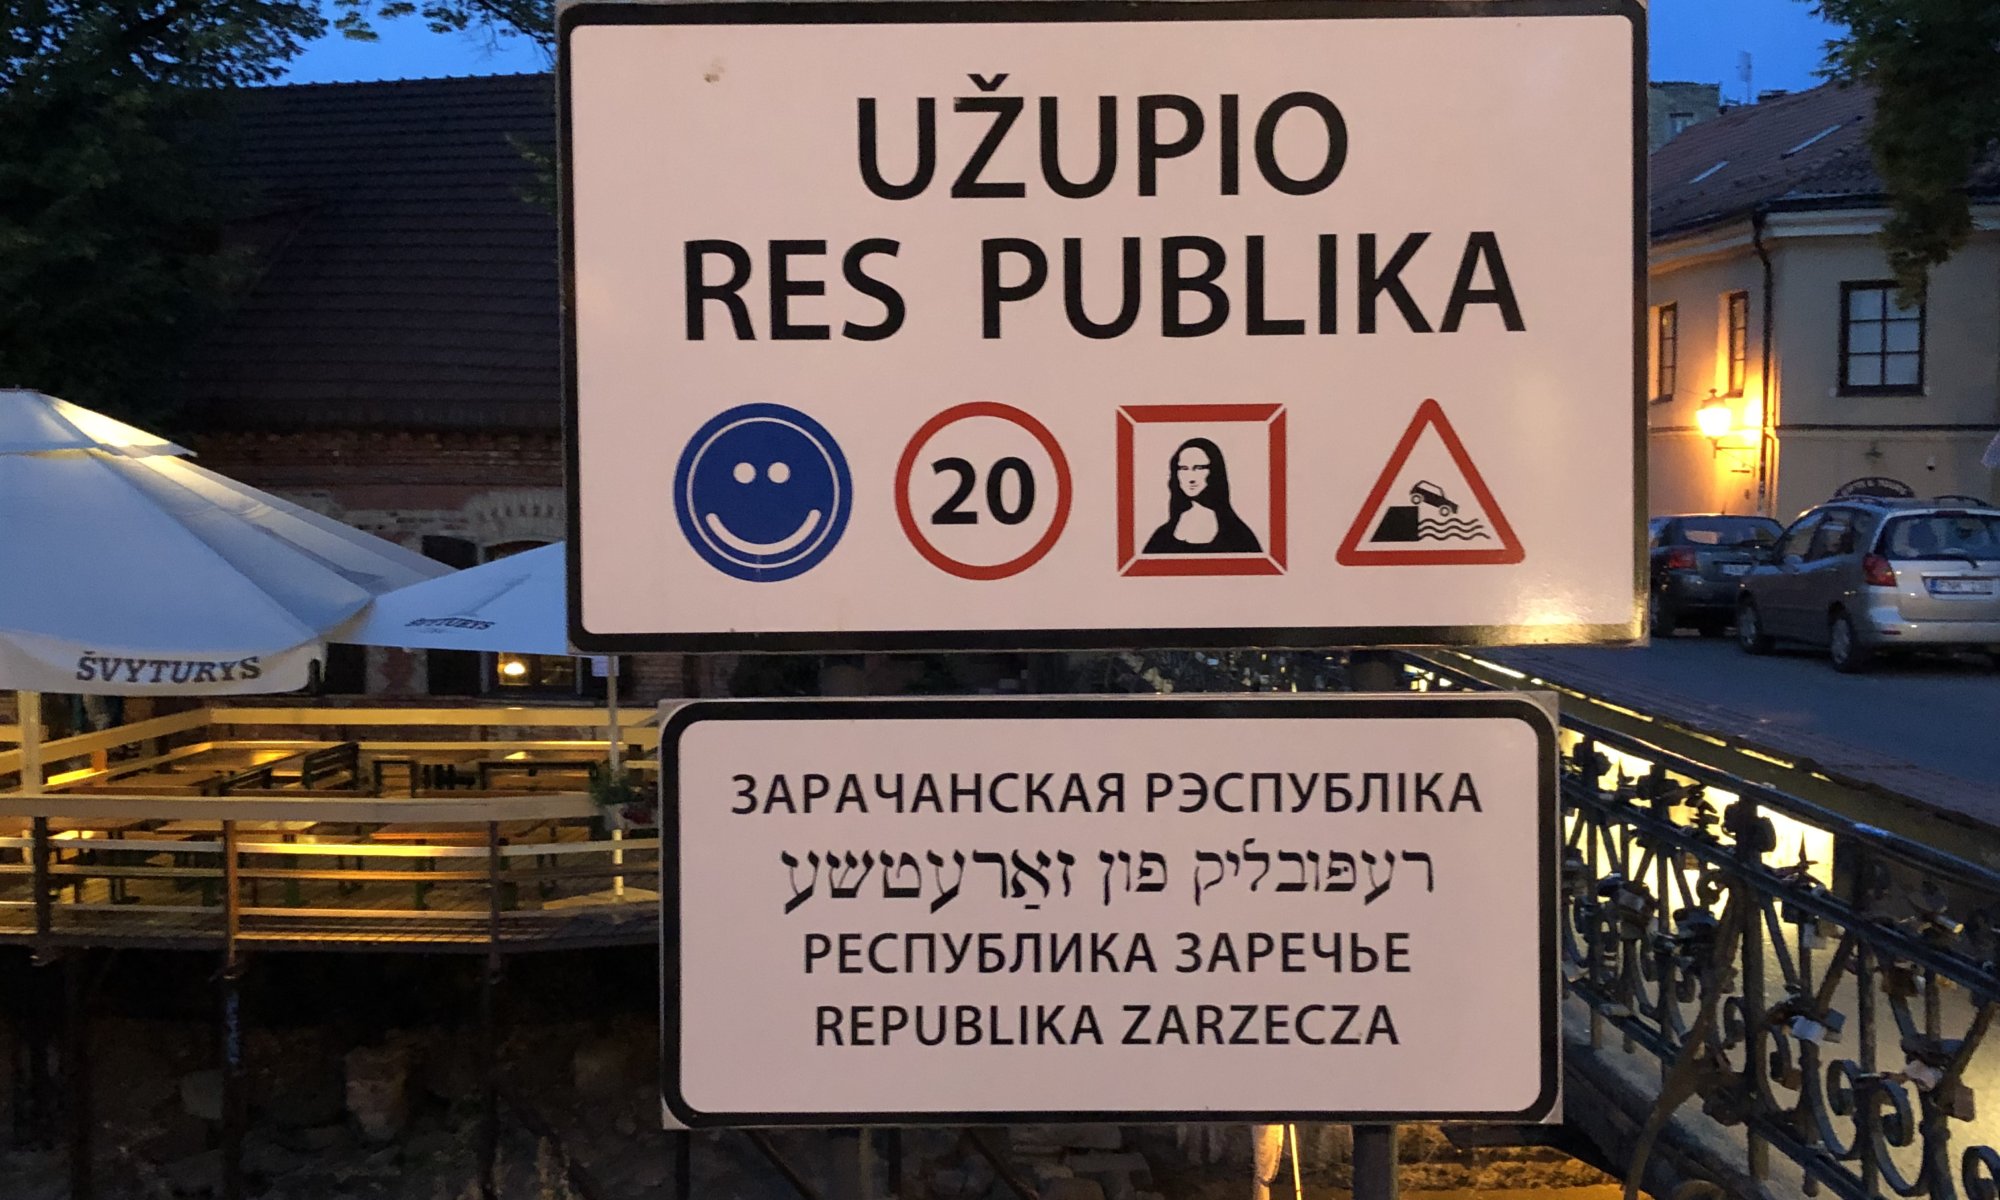 Republic of Užupis, Vilnius